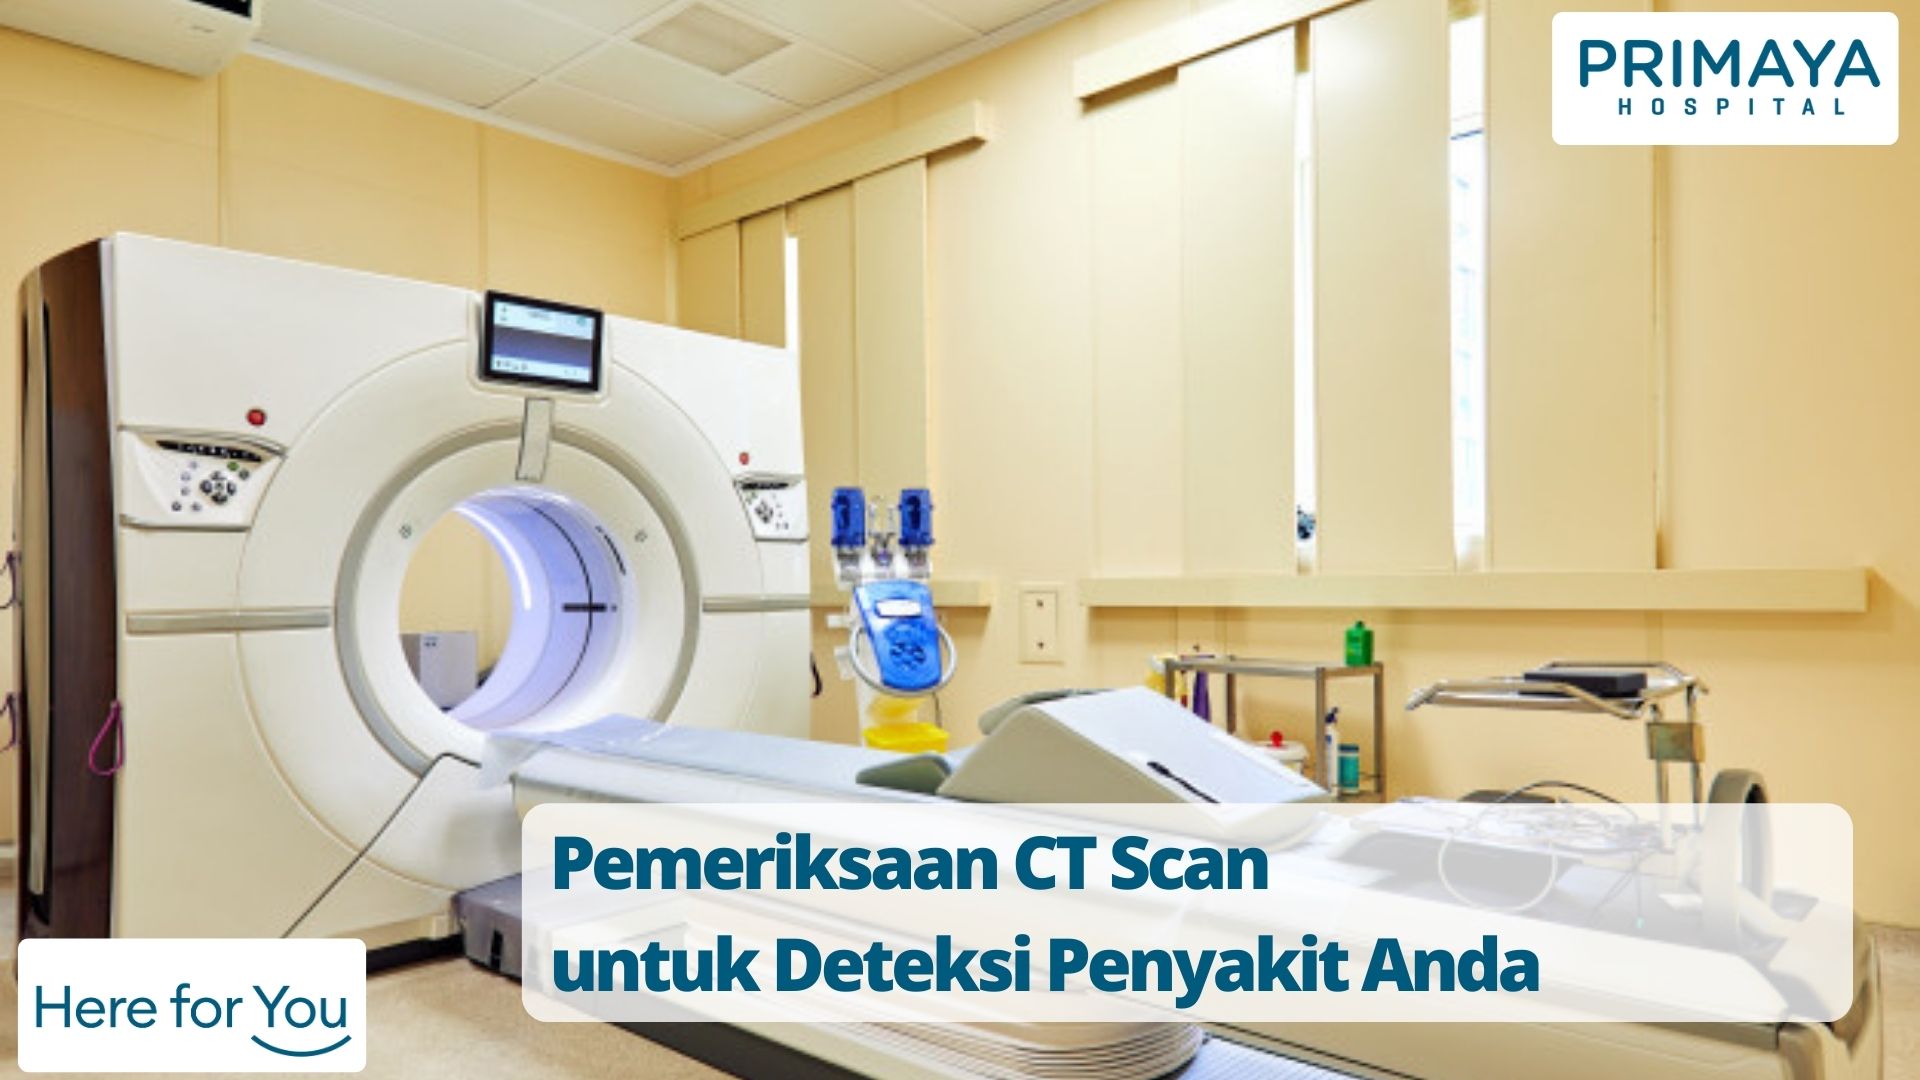 Pemeriksaan CT Scan untuk Deteksi Penyakit Anda